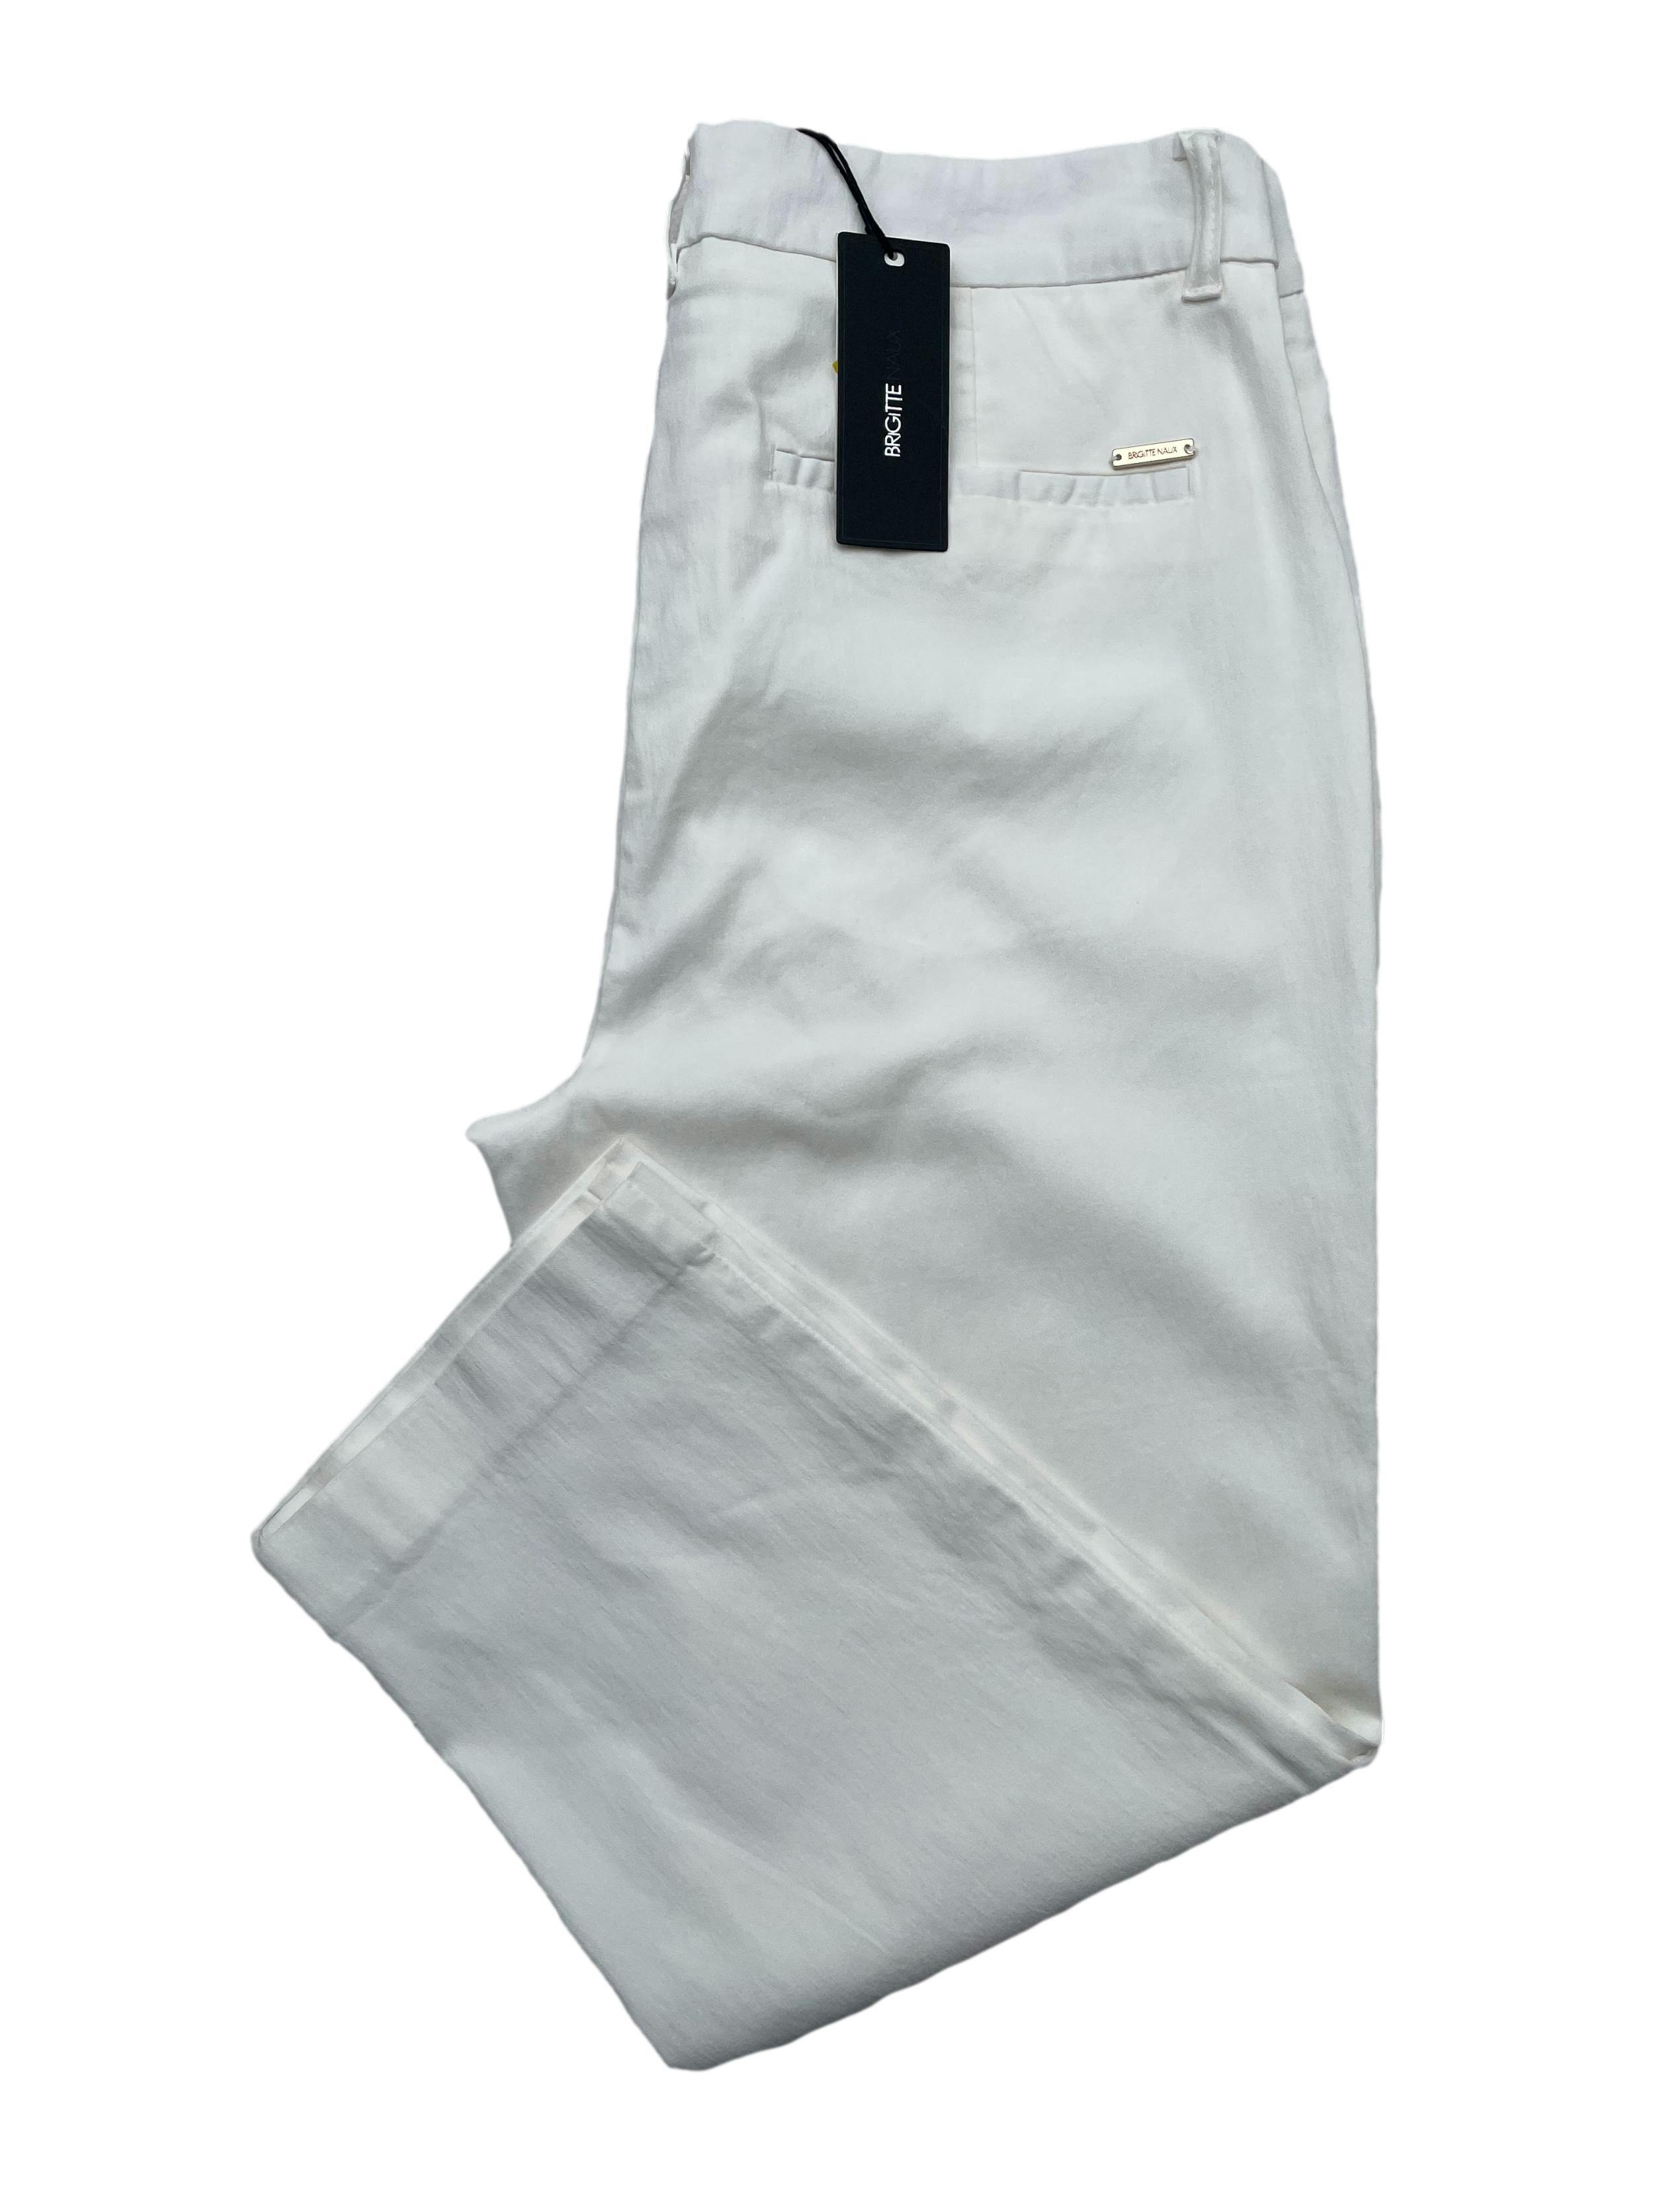 Pantalón capri Brigitte Naux blanco, a la cintura, tela stretch, con bolsillos laterales, cierre y corchete frontal. Cintura 85cm sin estirar, Largo 85cm. Nuevo con etiqueta.